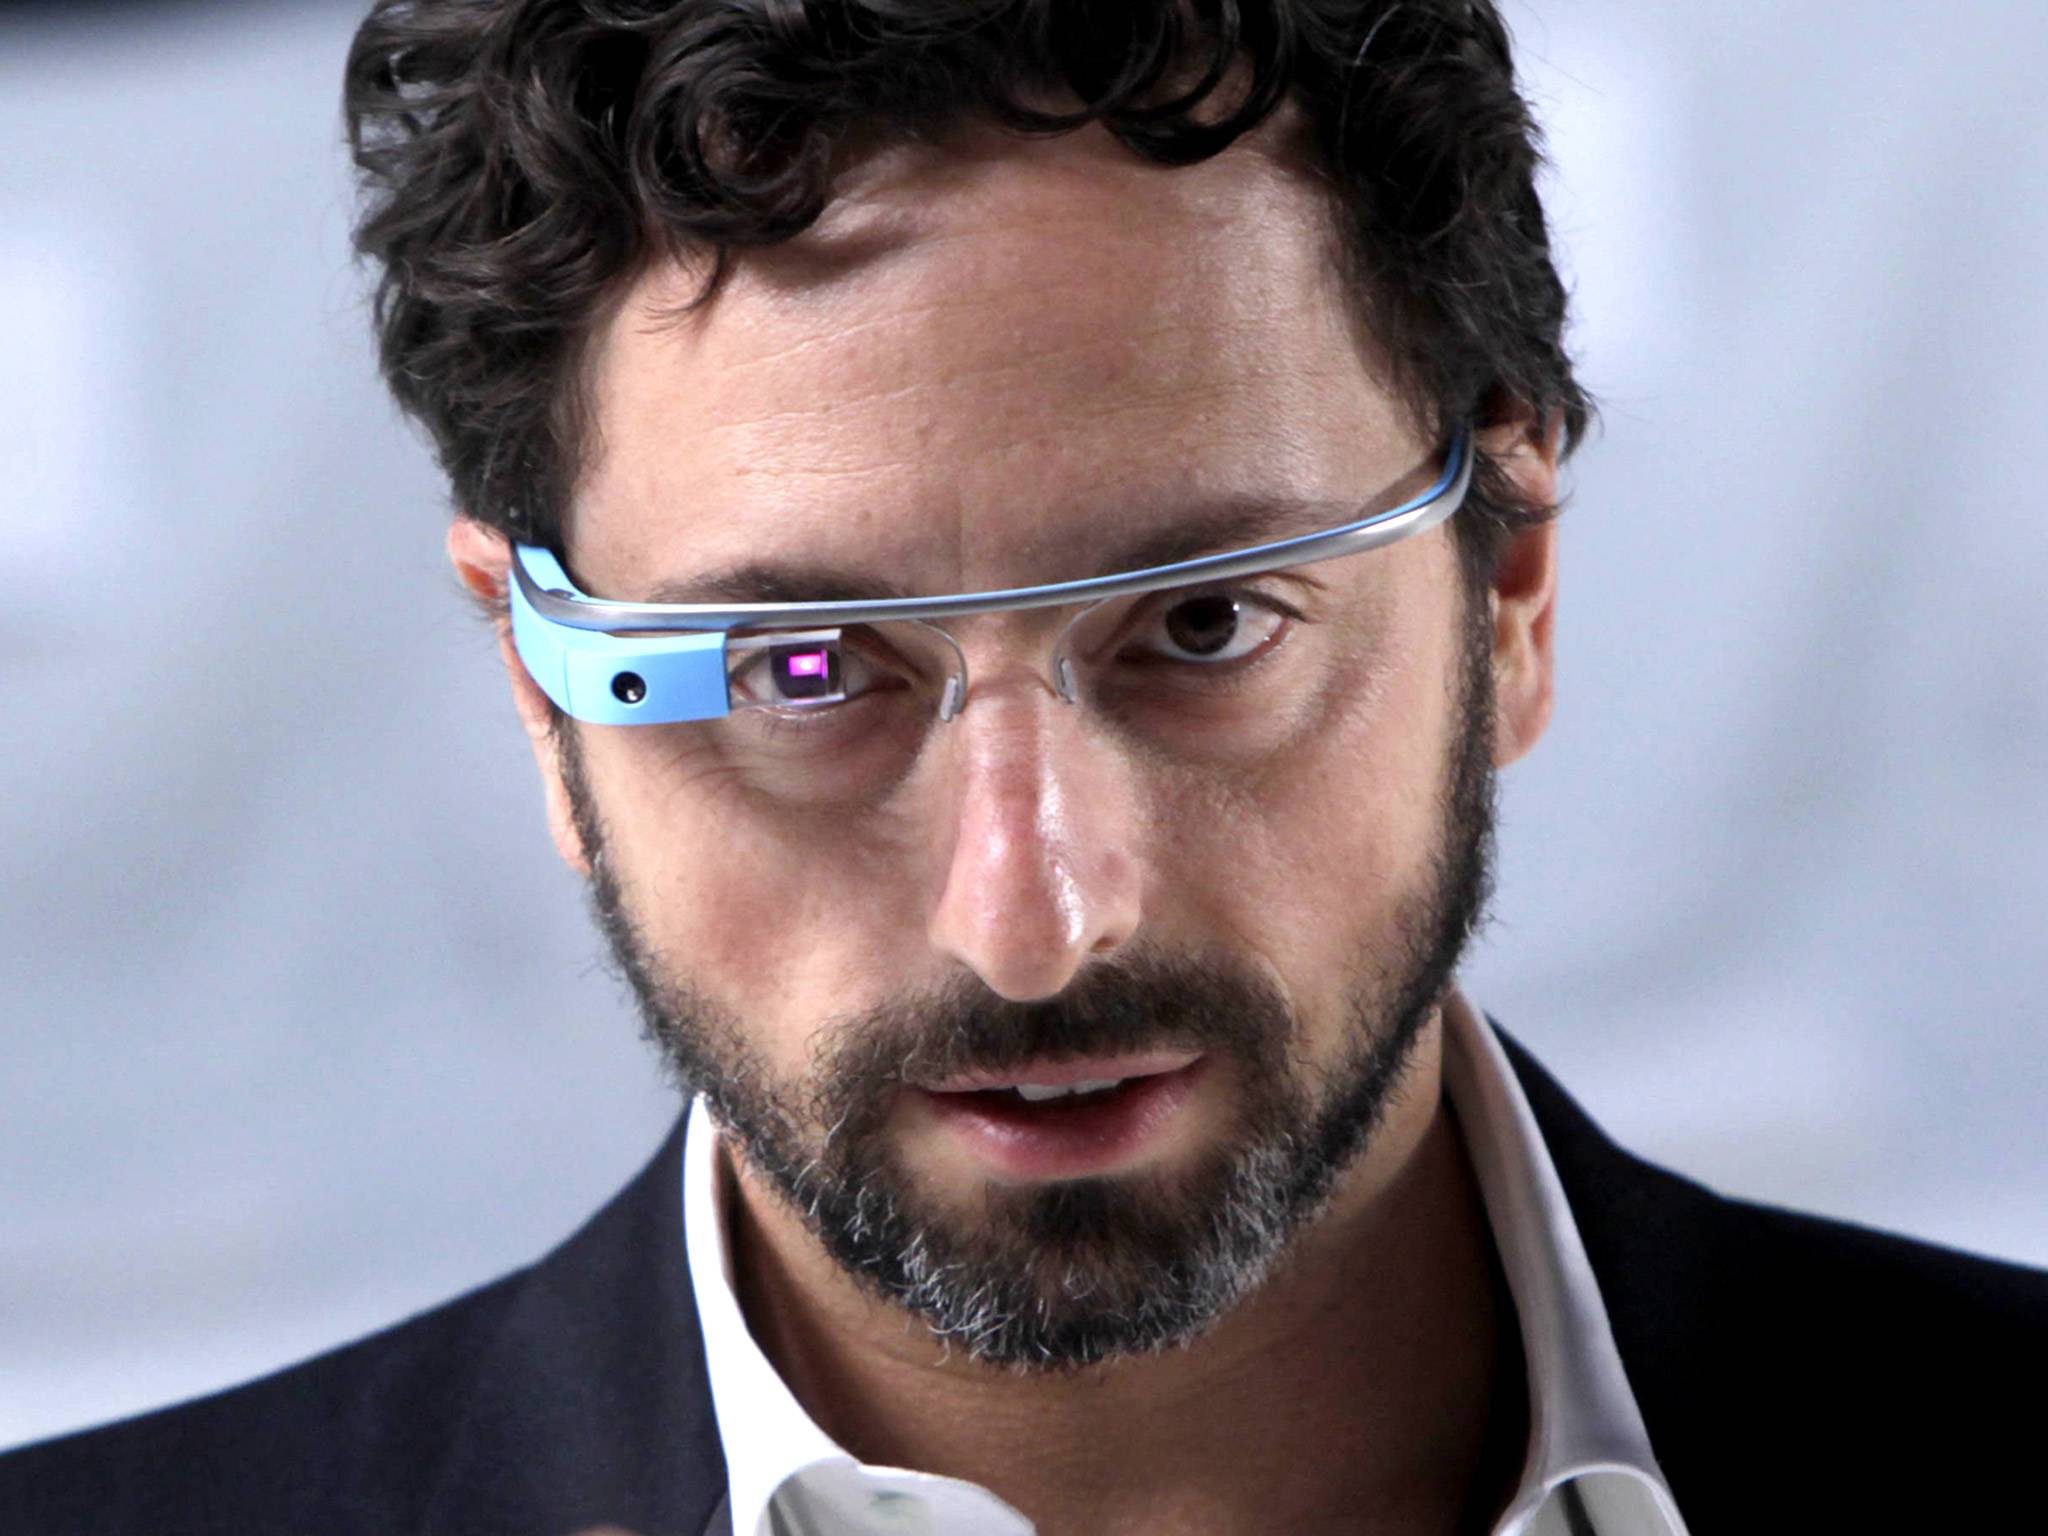 Sergey Brin Wallpaper. Sergey Brin